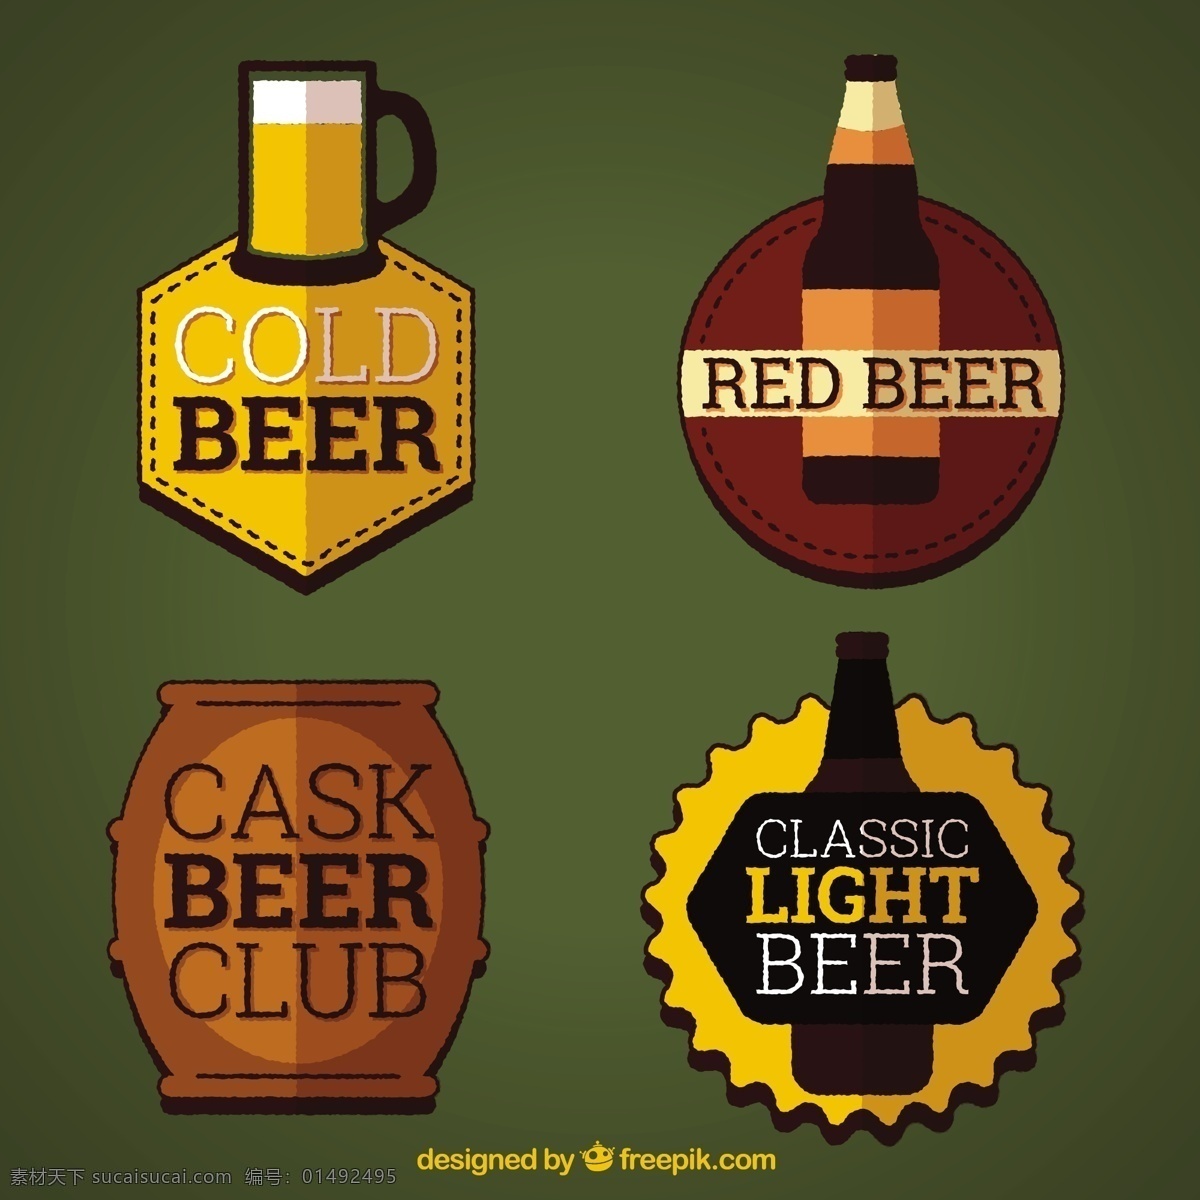 啤酒贴纸包 啤酒贴纸 啤酒 贴纸 徽章 啤酒徽章